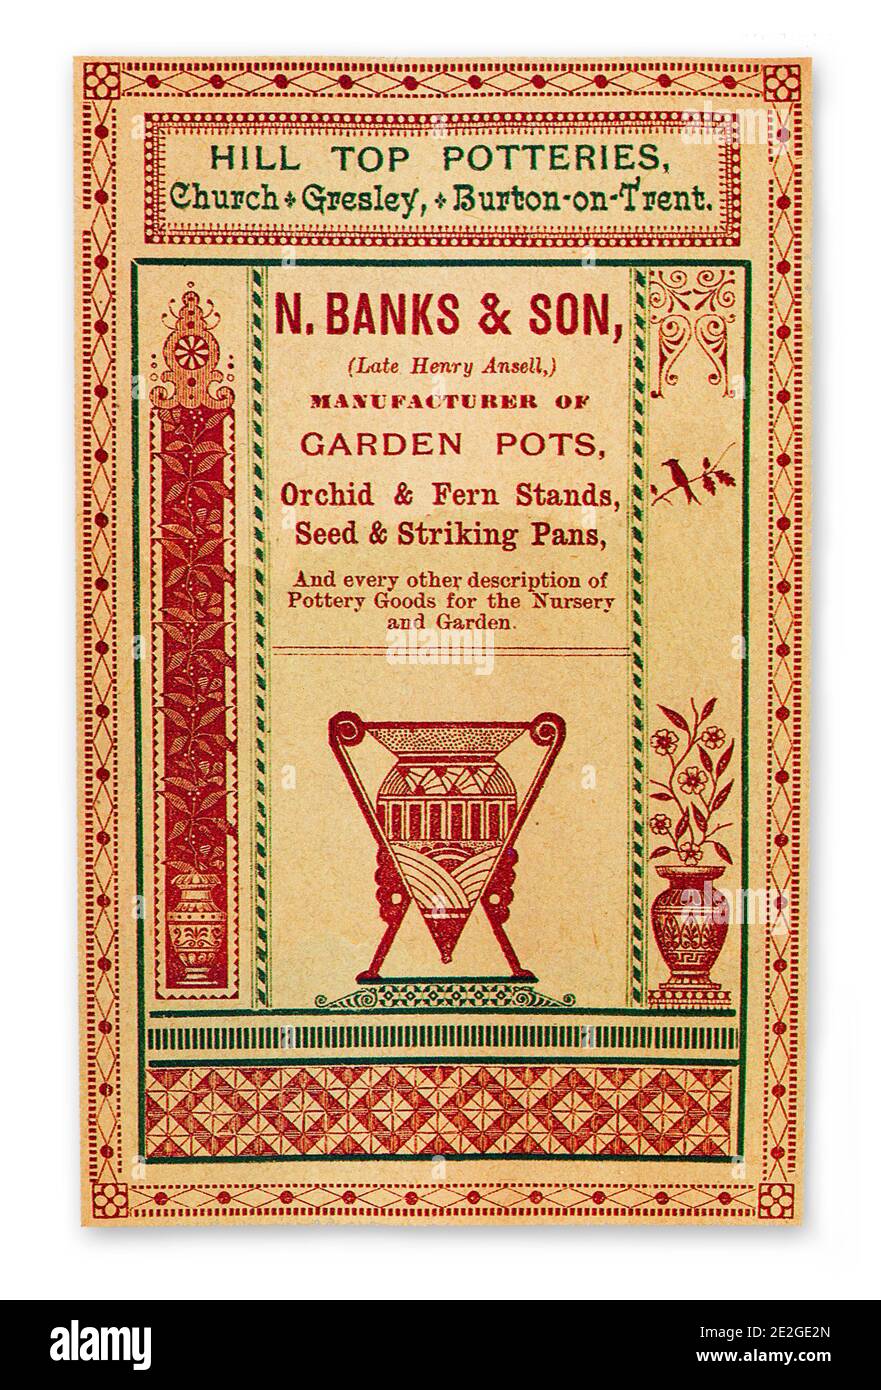 Una pubblicità commerciale per vasi da giardino e ceramiche di Hill Migliori Potterie durante la mania vittoriana per felci e orchidee Foto Stock